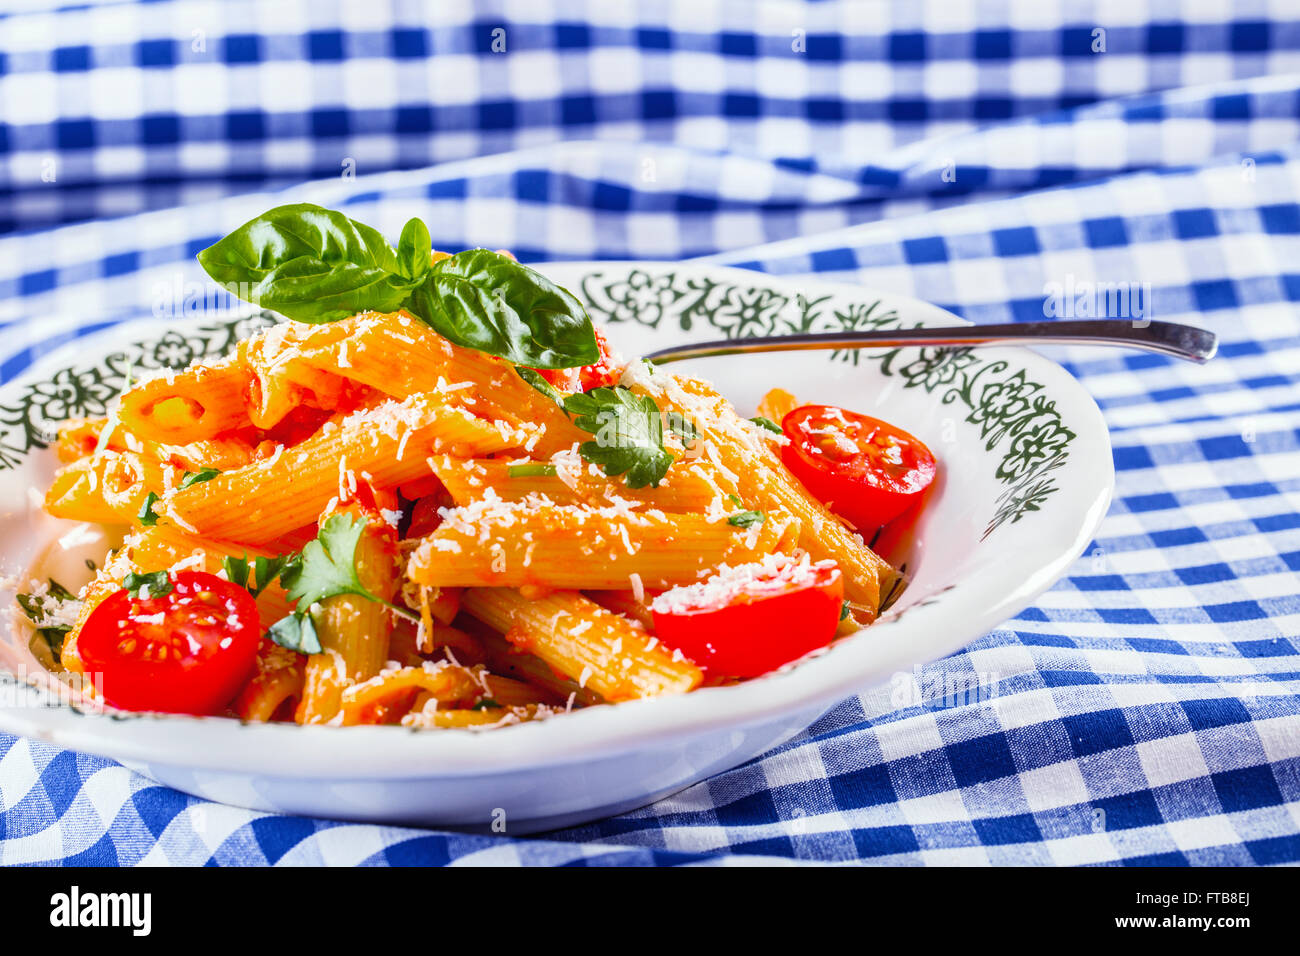 Plaque avec pene pâtes sauce bolognaise tomates cerise haut de persil et les feuilles de basilic sur nappe bleue à carreaux. L'italien et Med Banque D'Images